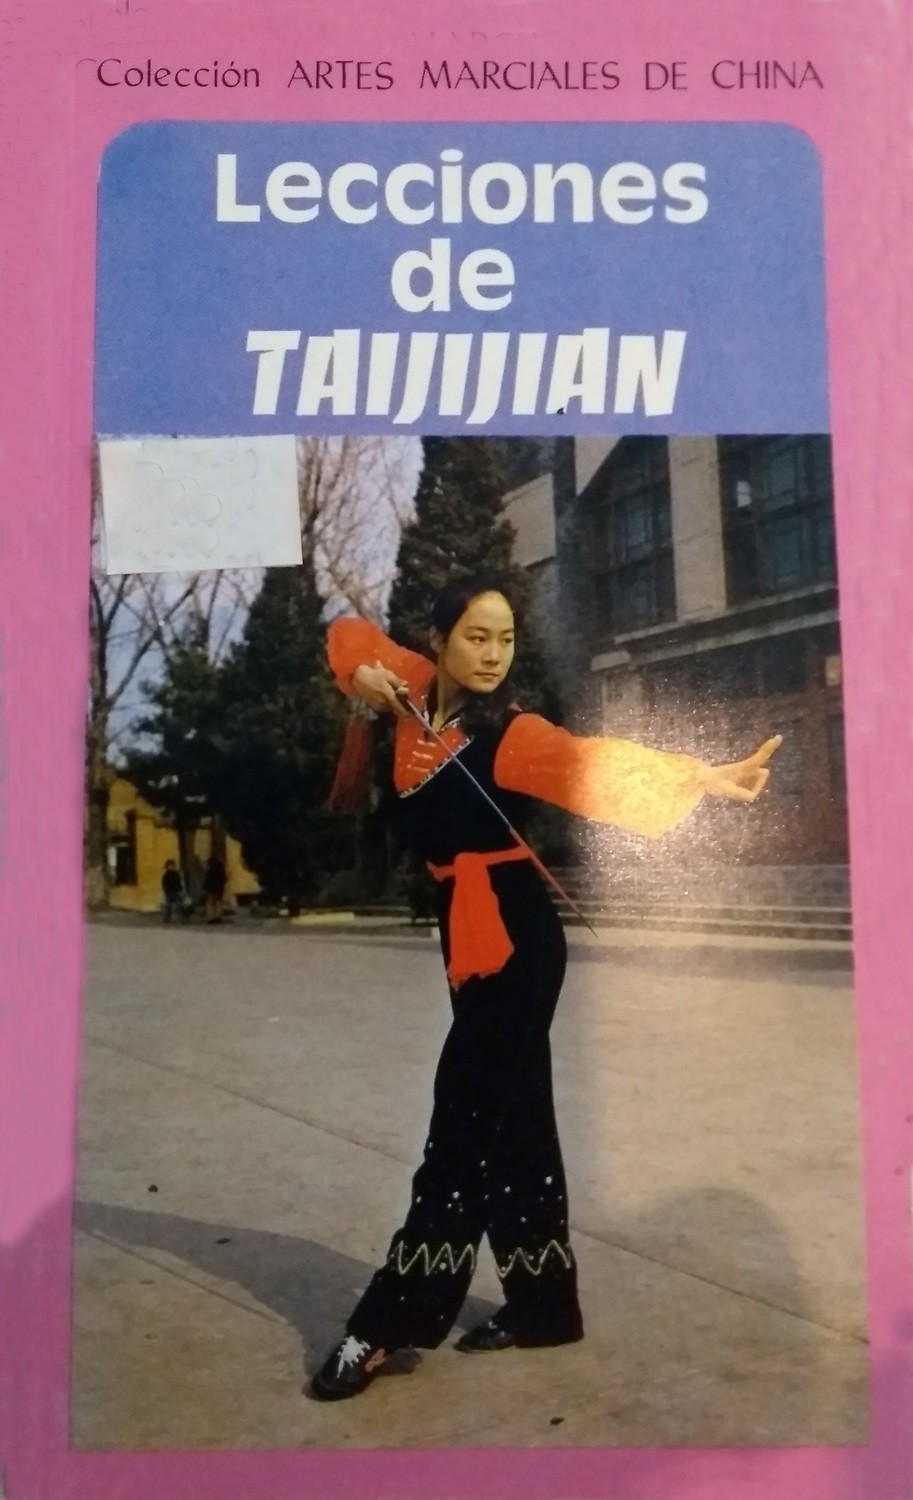 Lecciones de Taijijian